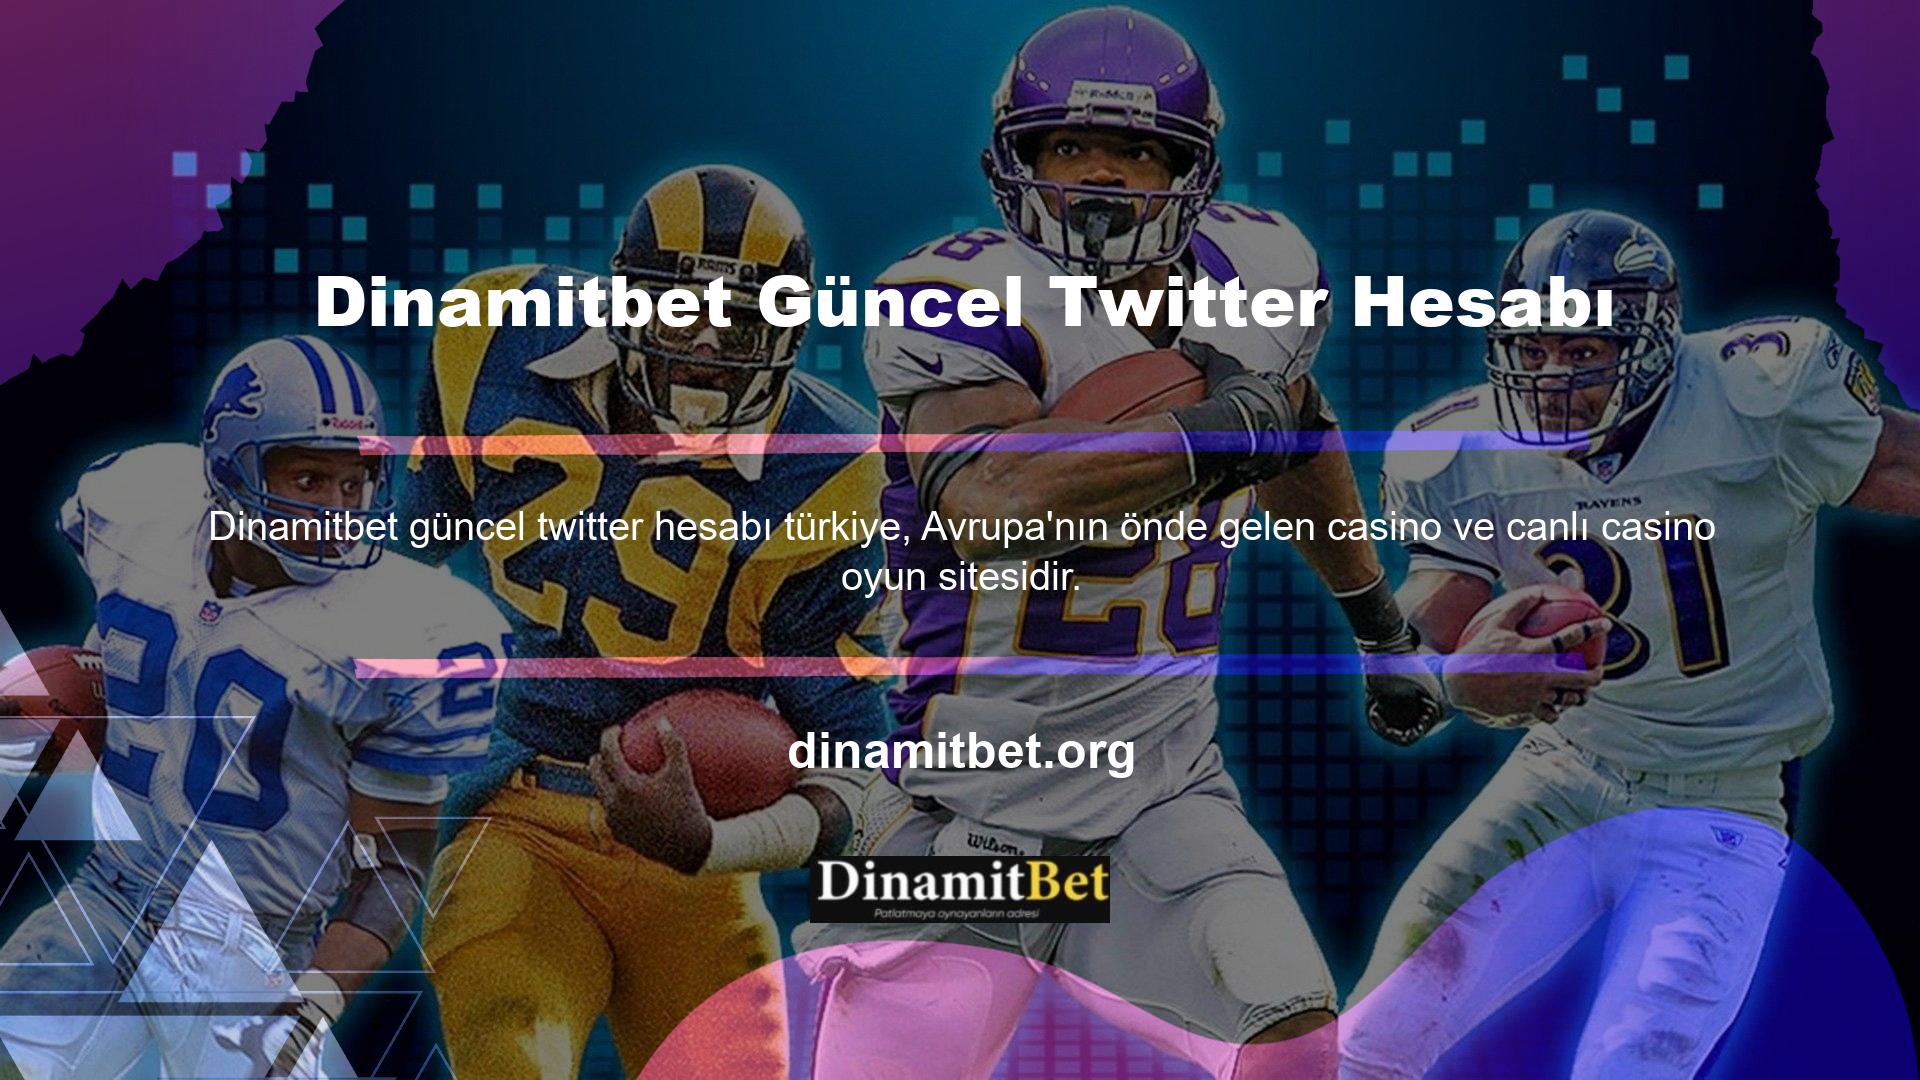 Avrupa'da çok sayıda kullanıcı bulan Dinamitbet Avrupa Devi, artık Türkiye'de de Türk oyun tutkunlarına hizmet veriyor